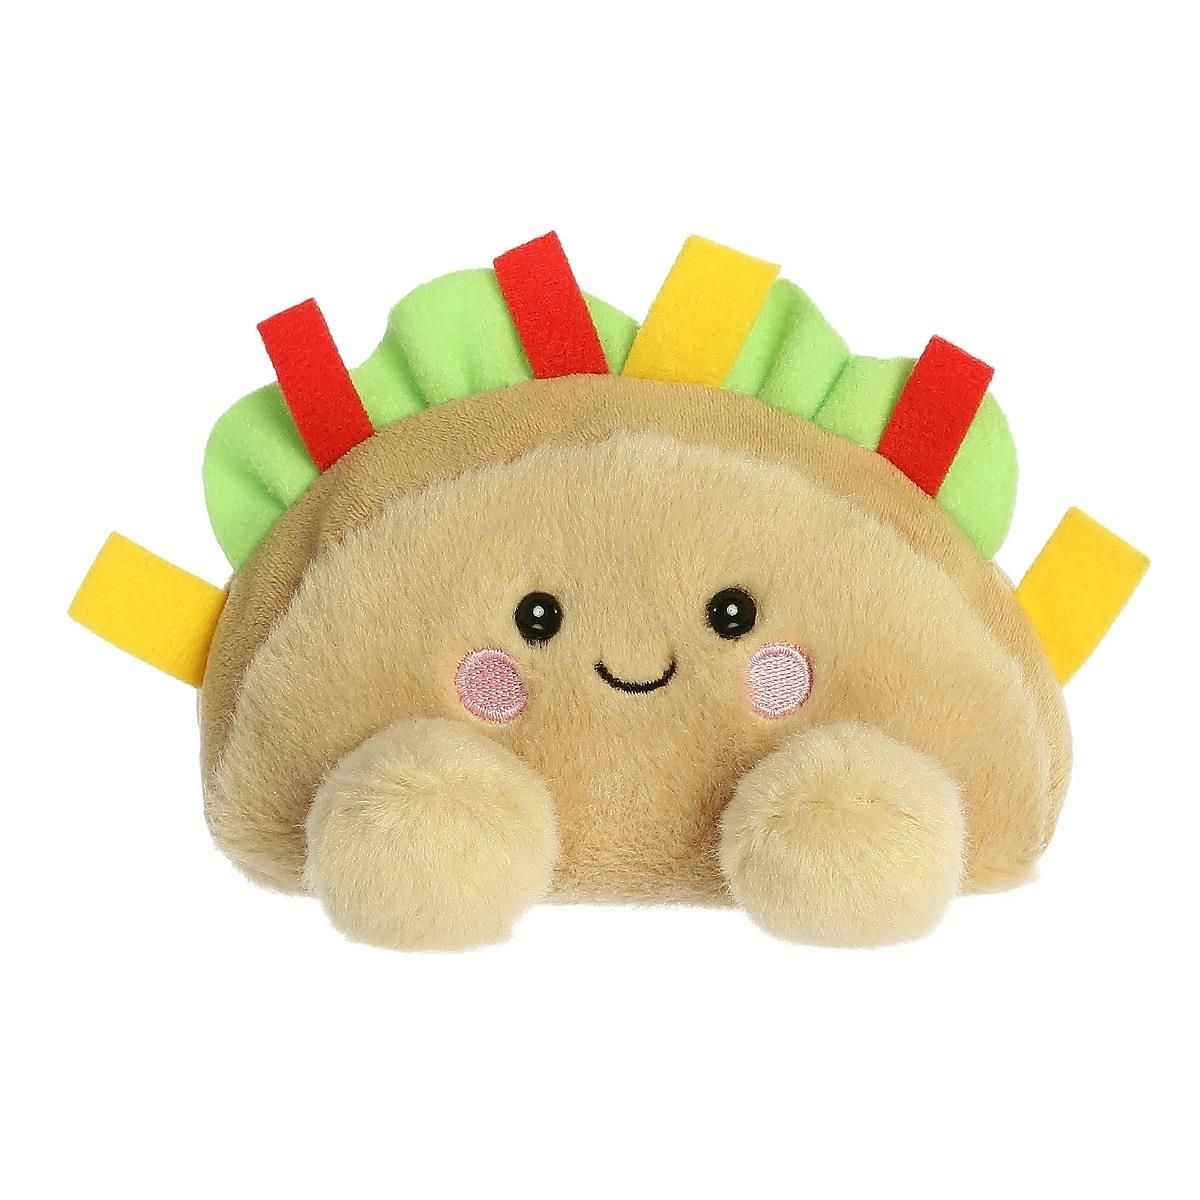 Cuddly toy Fiesta Taco - Palm Pals